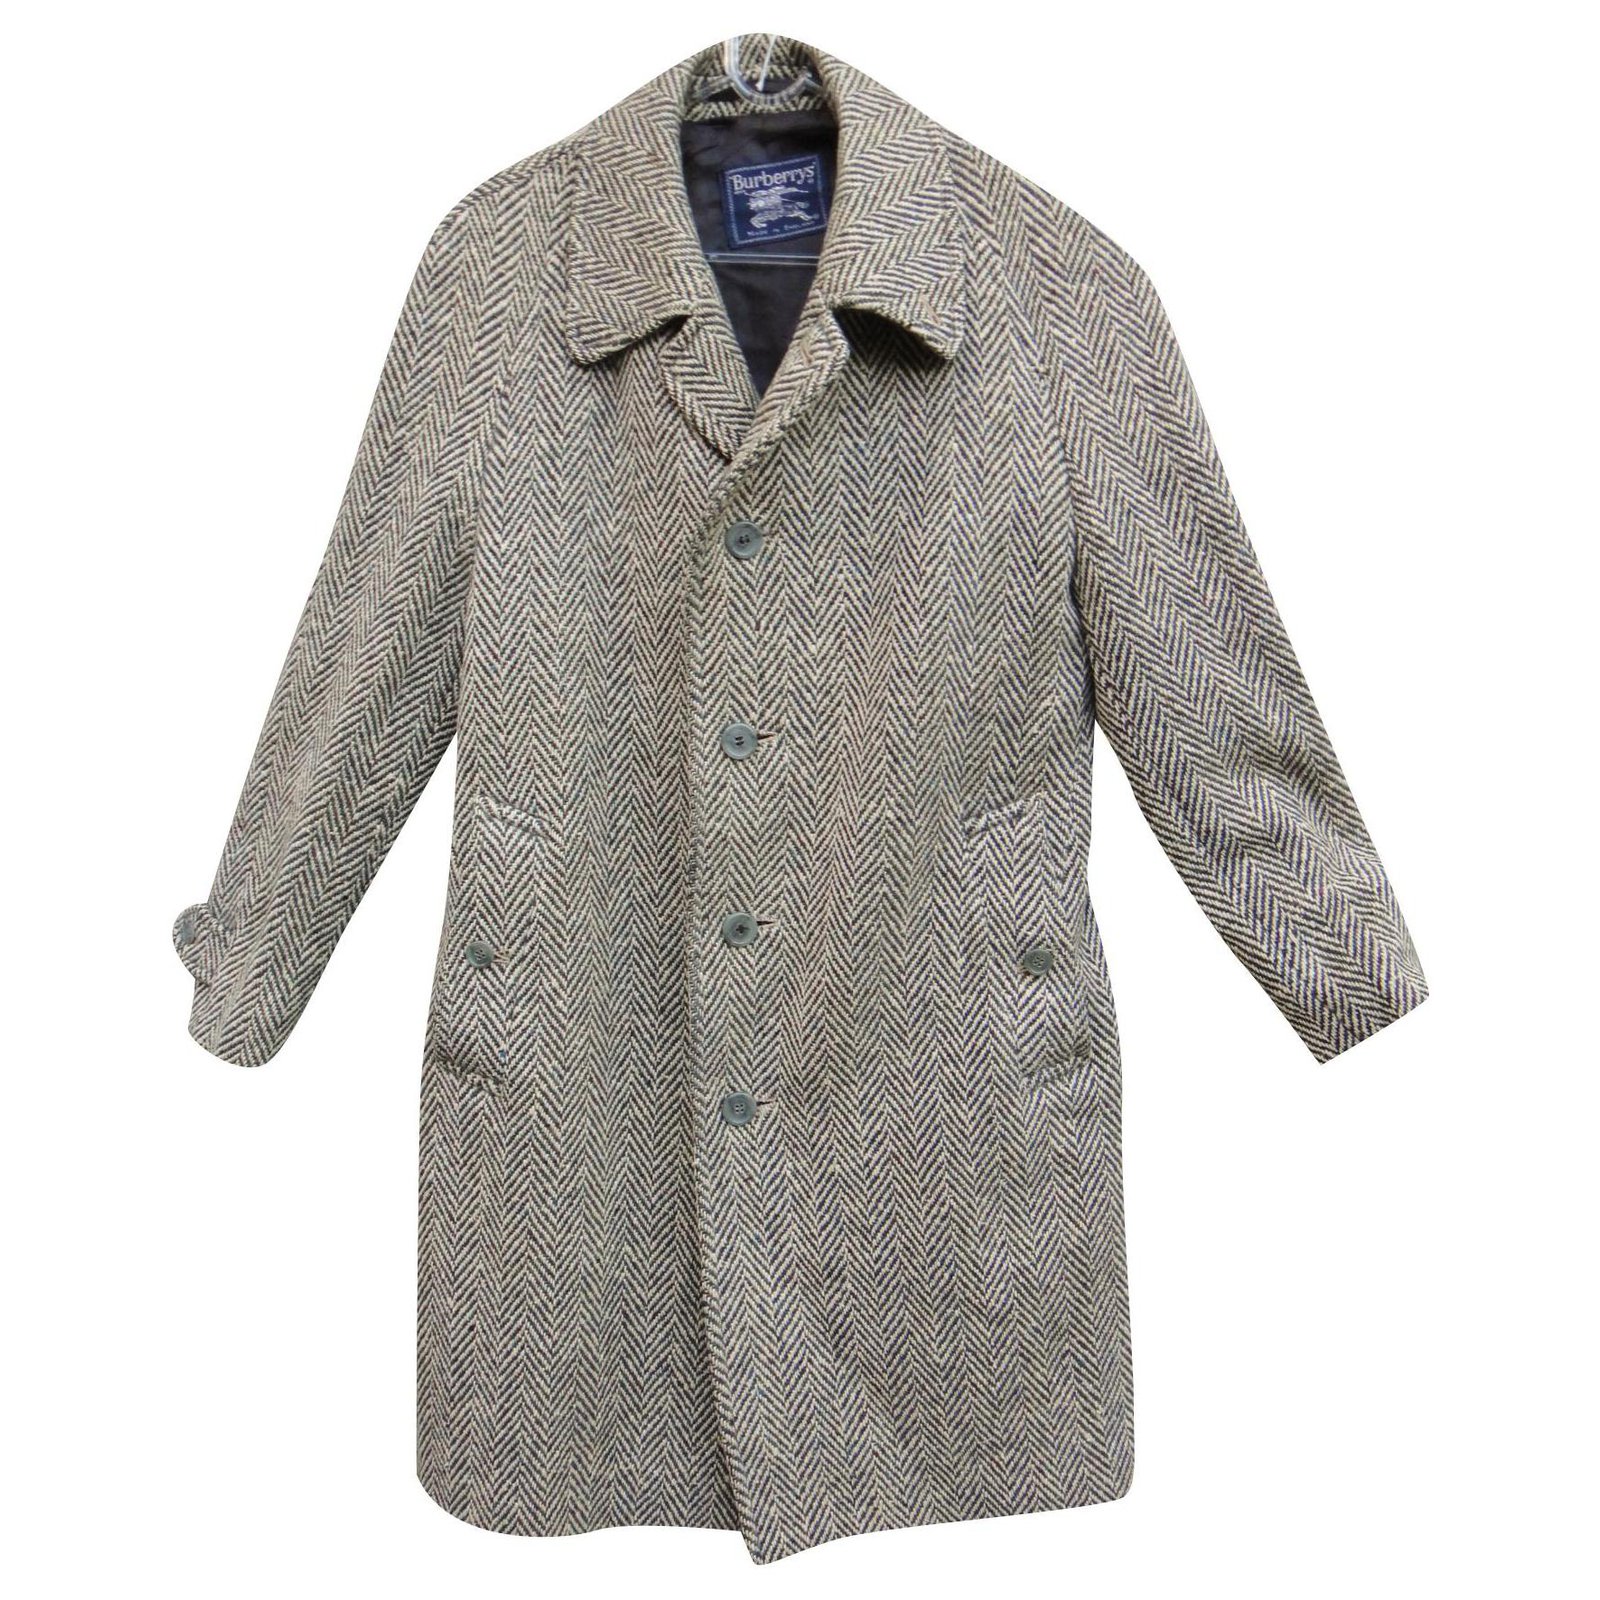 Burberry men's coat in Irish Tweed t 48, vintage Grey Wool ref